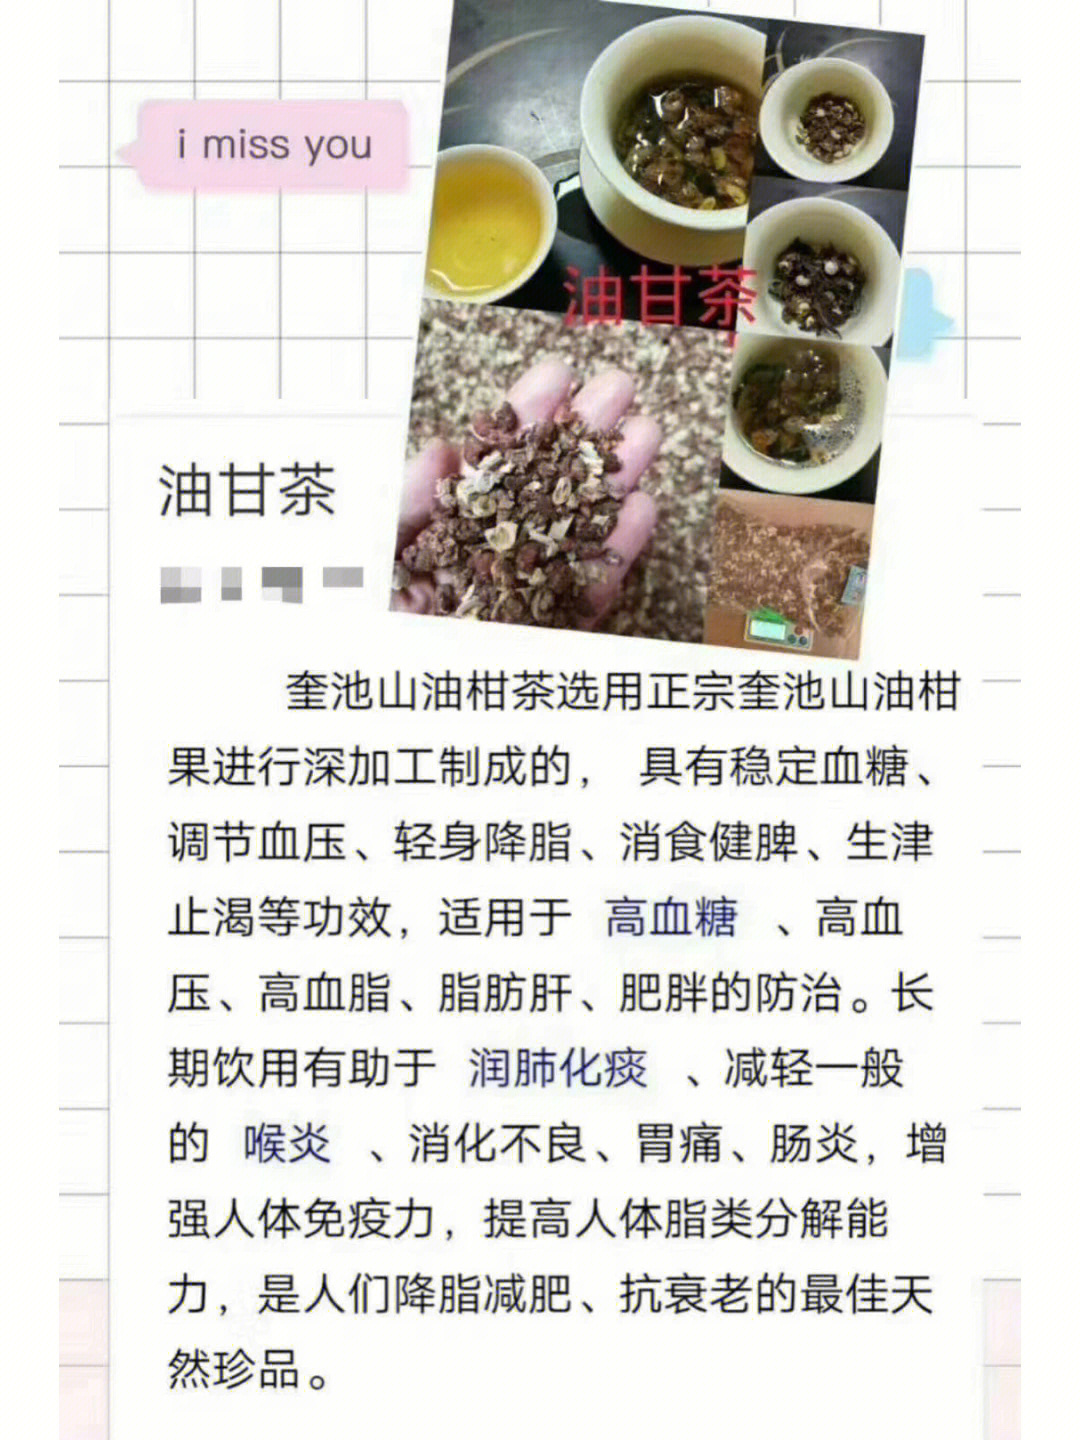 广西油茶简介图片